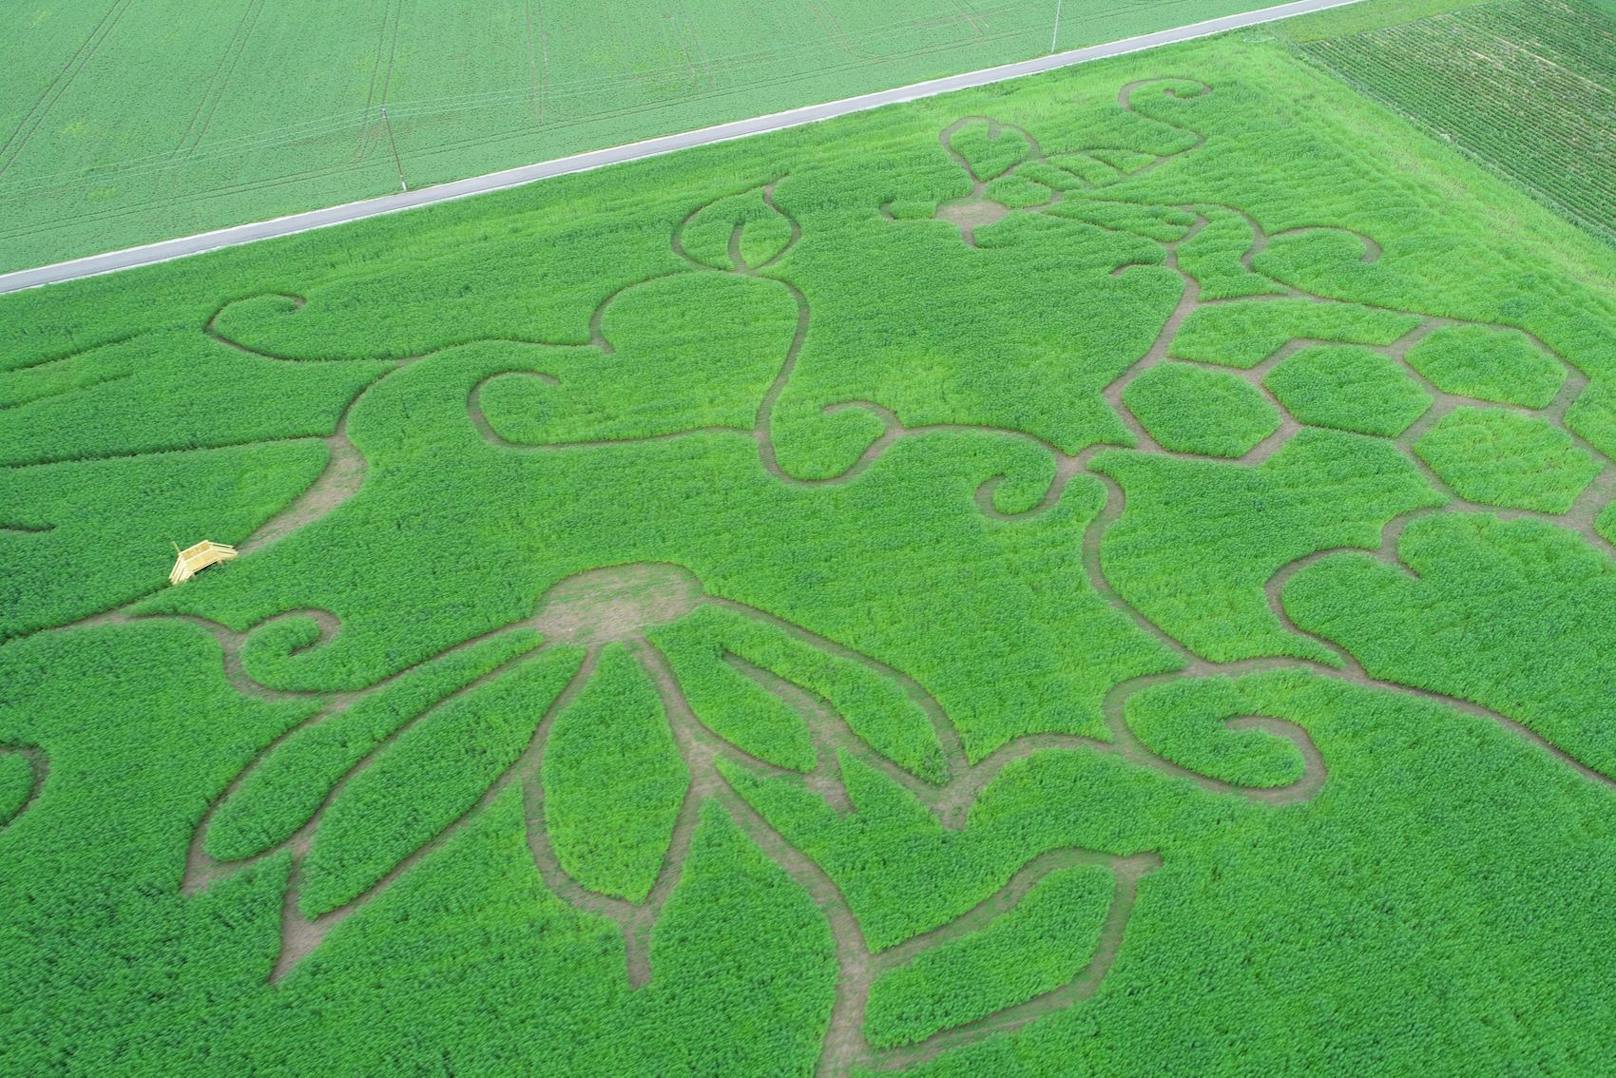 Beeindruckende Aufnahmen aus der Luft zeigen das riesige Labyrinth in einem Hanf-Feld direkt neben dem Haid-Center.